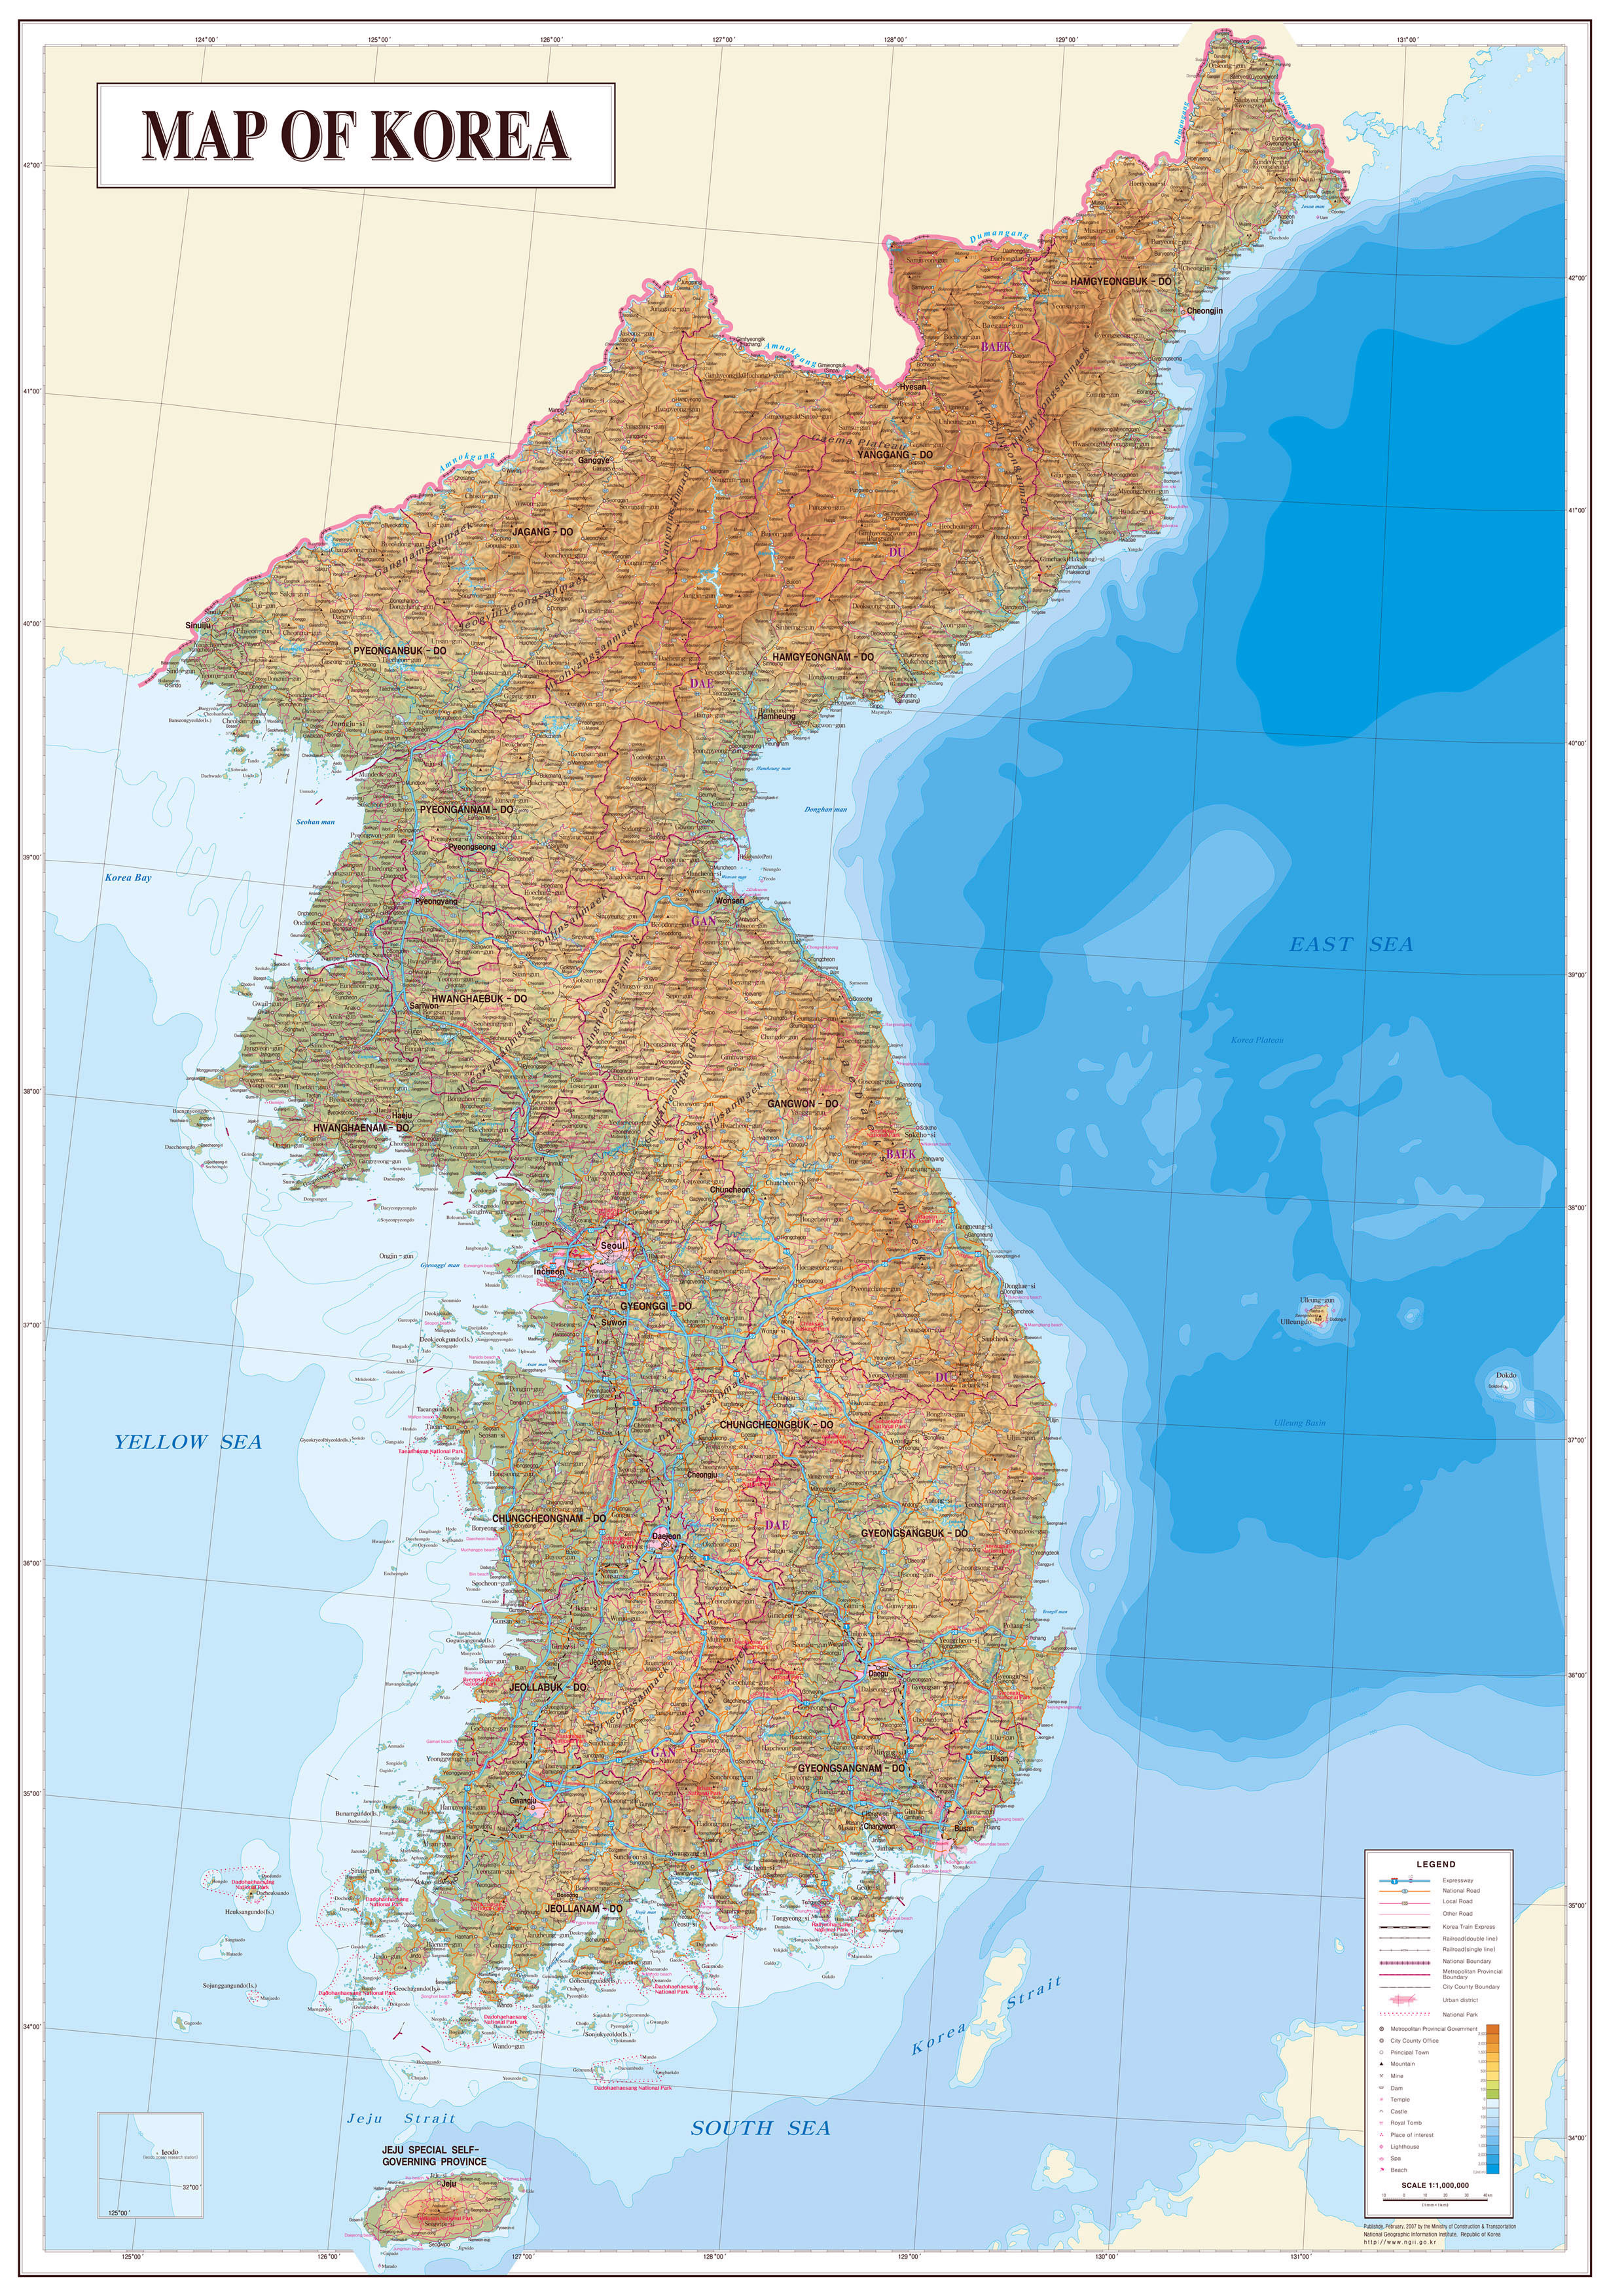 Grande mapa físico de península de Corea con todas